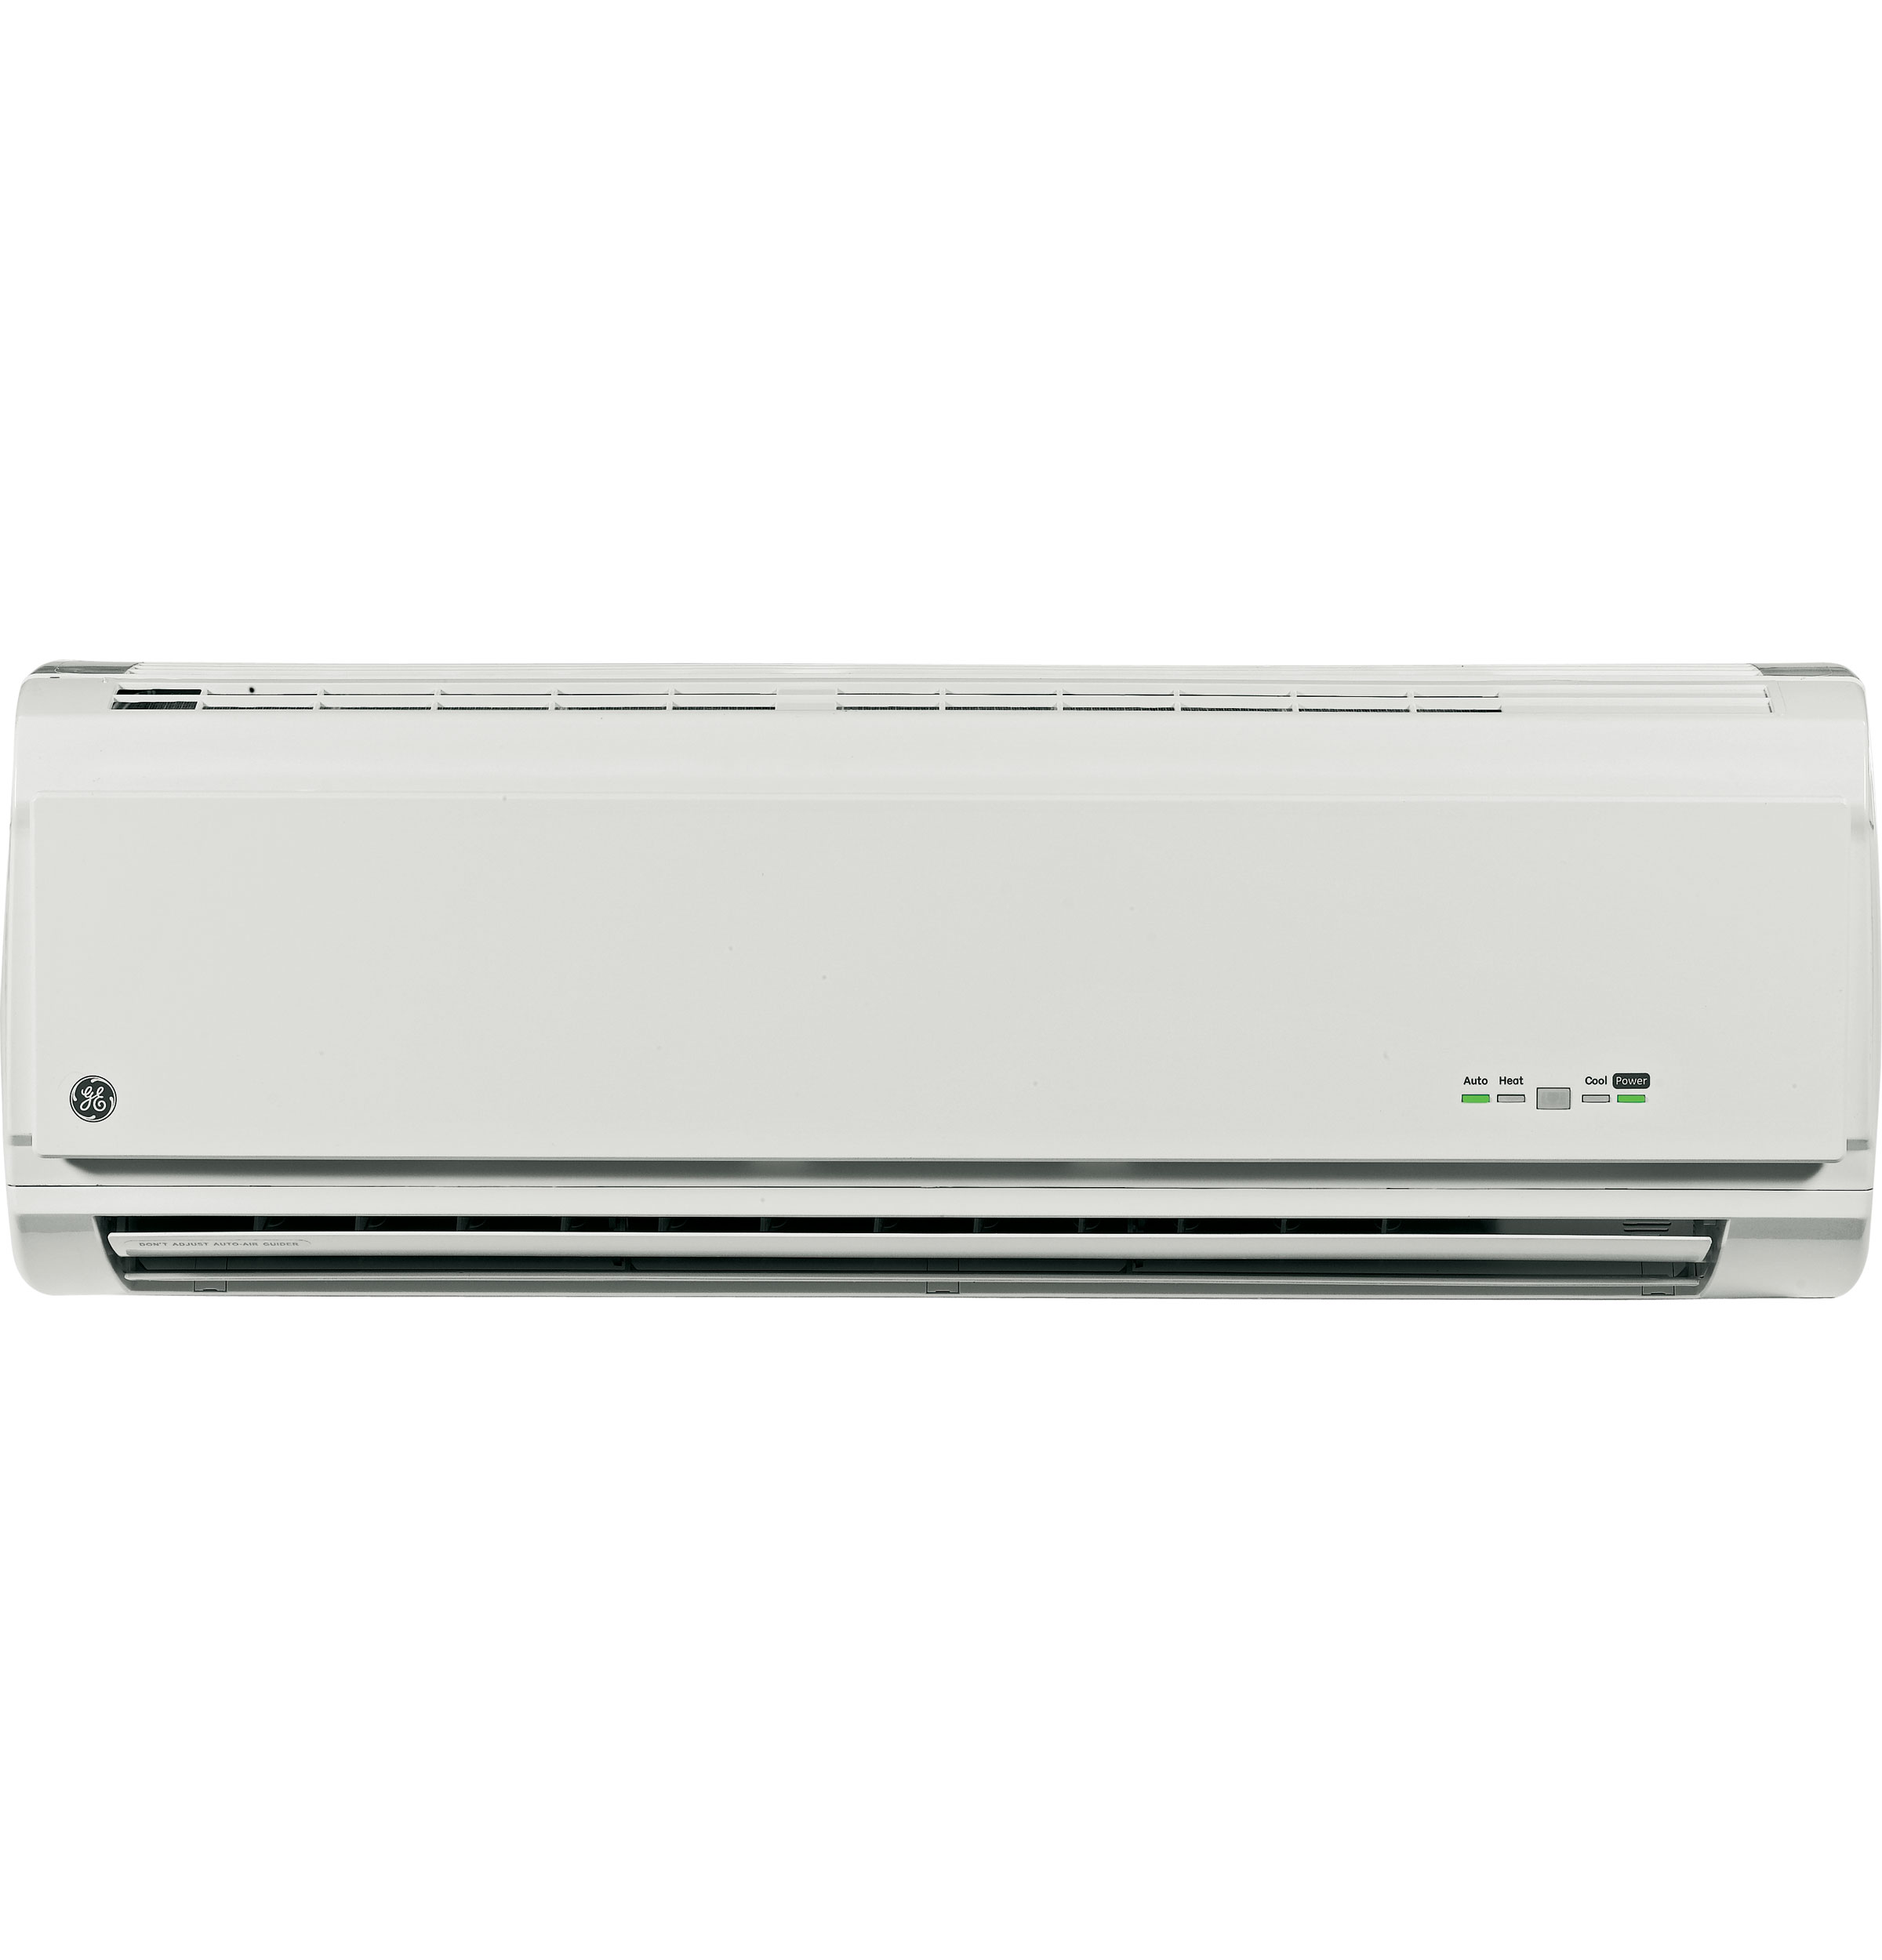 GE Split System Air Conditioner - Indoor unit